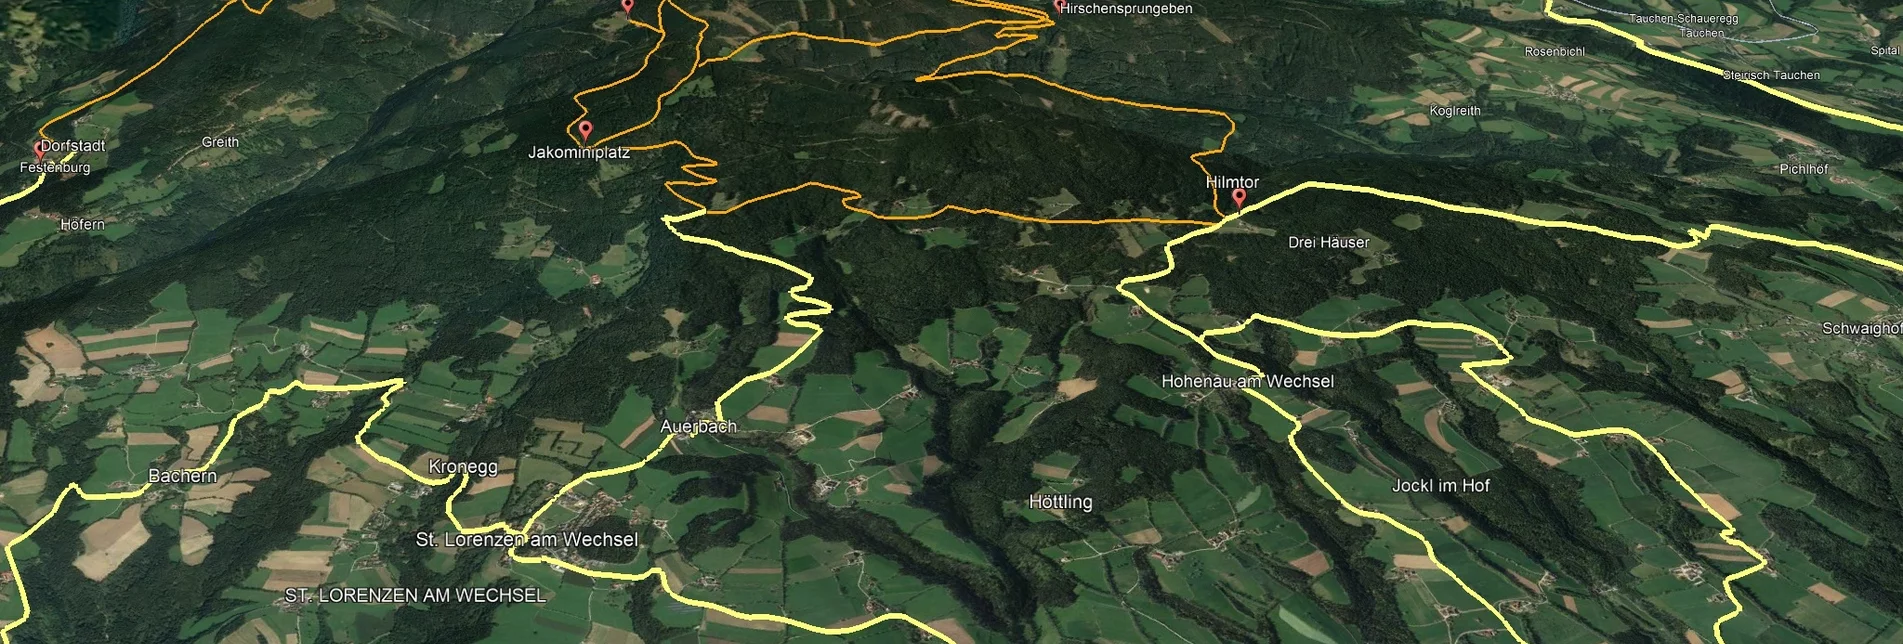 Mountainbike Steirische Wexl Trails - Zubringer Lafnitz über Rohrbach zum Hilmtor - Touren-Impression #1 | © Verein Tourismusentwicklung Steirischer Wechsel